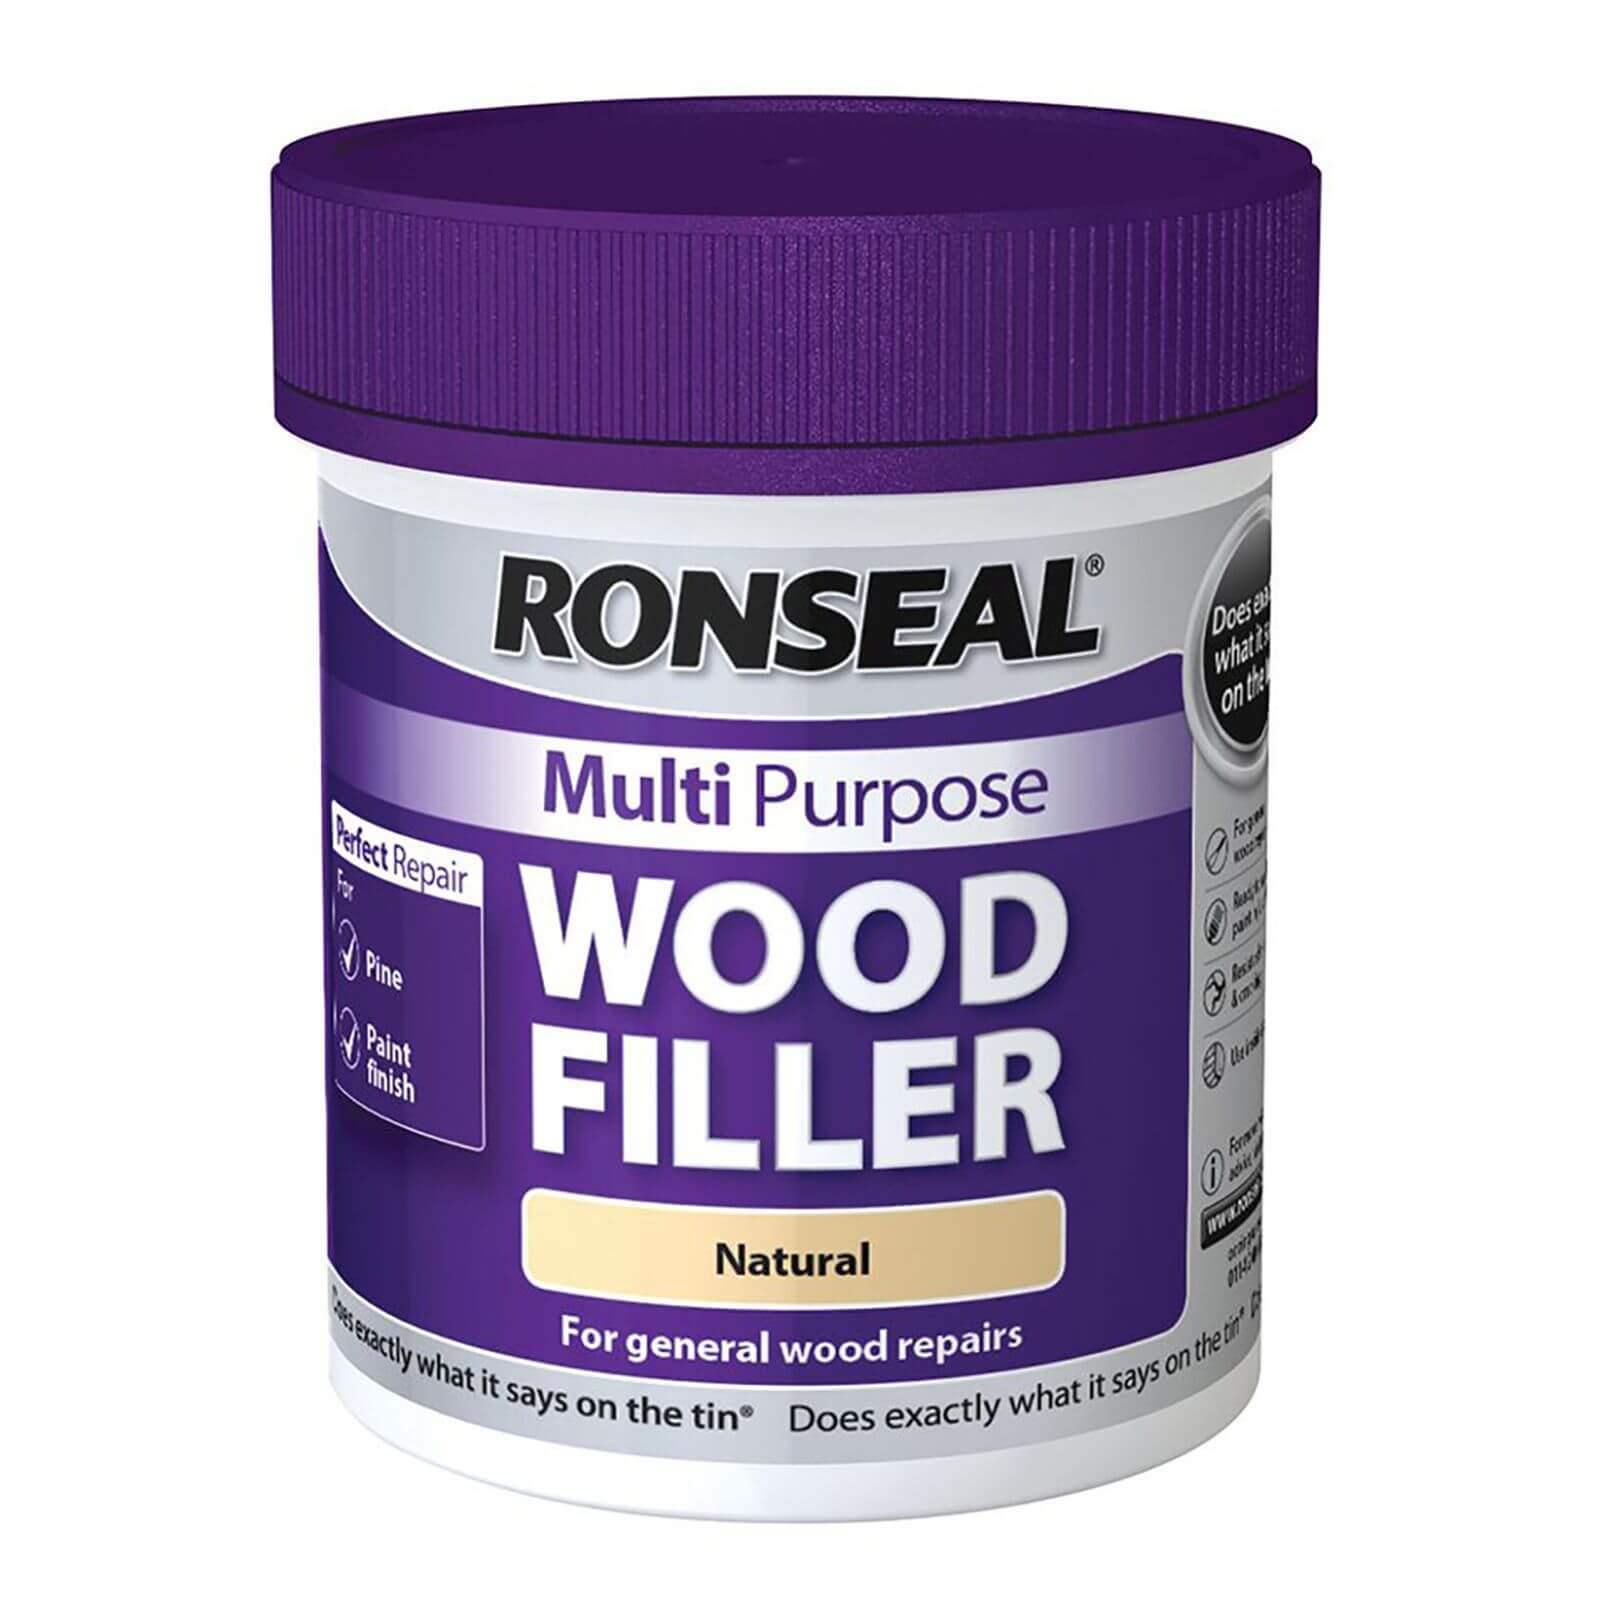 Ronseal Multipurpose Wood Filler Tub - Natural - 250g